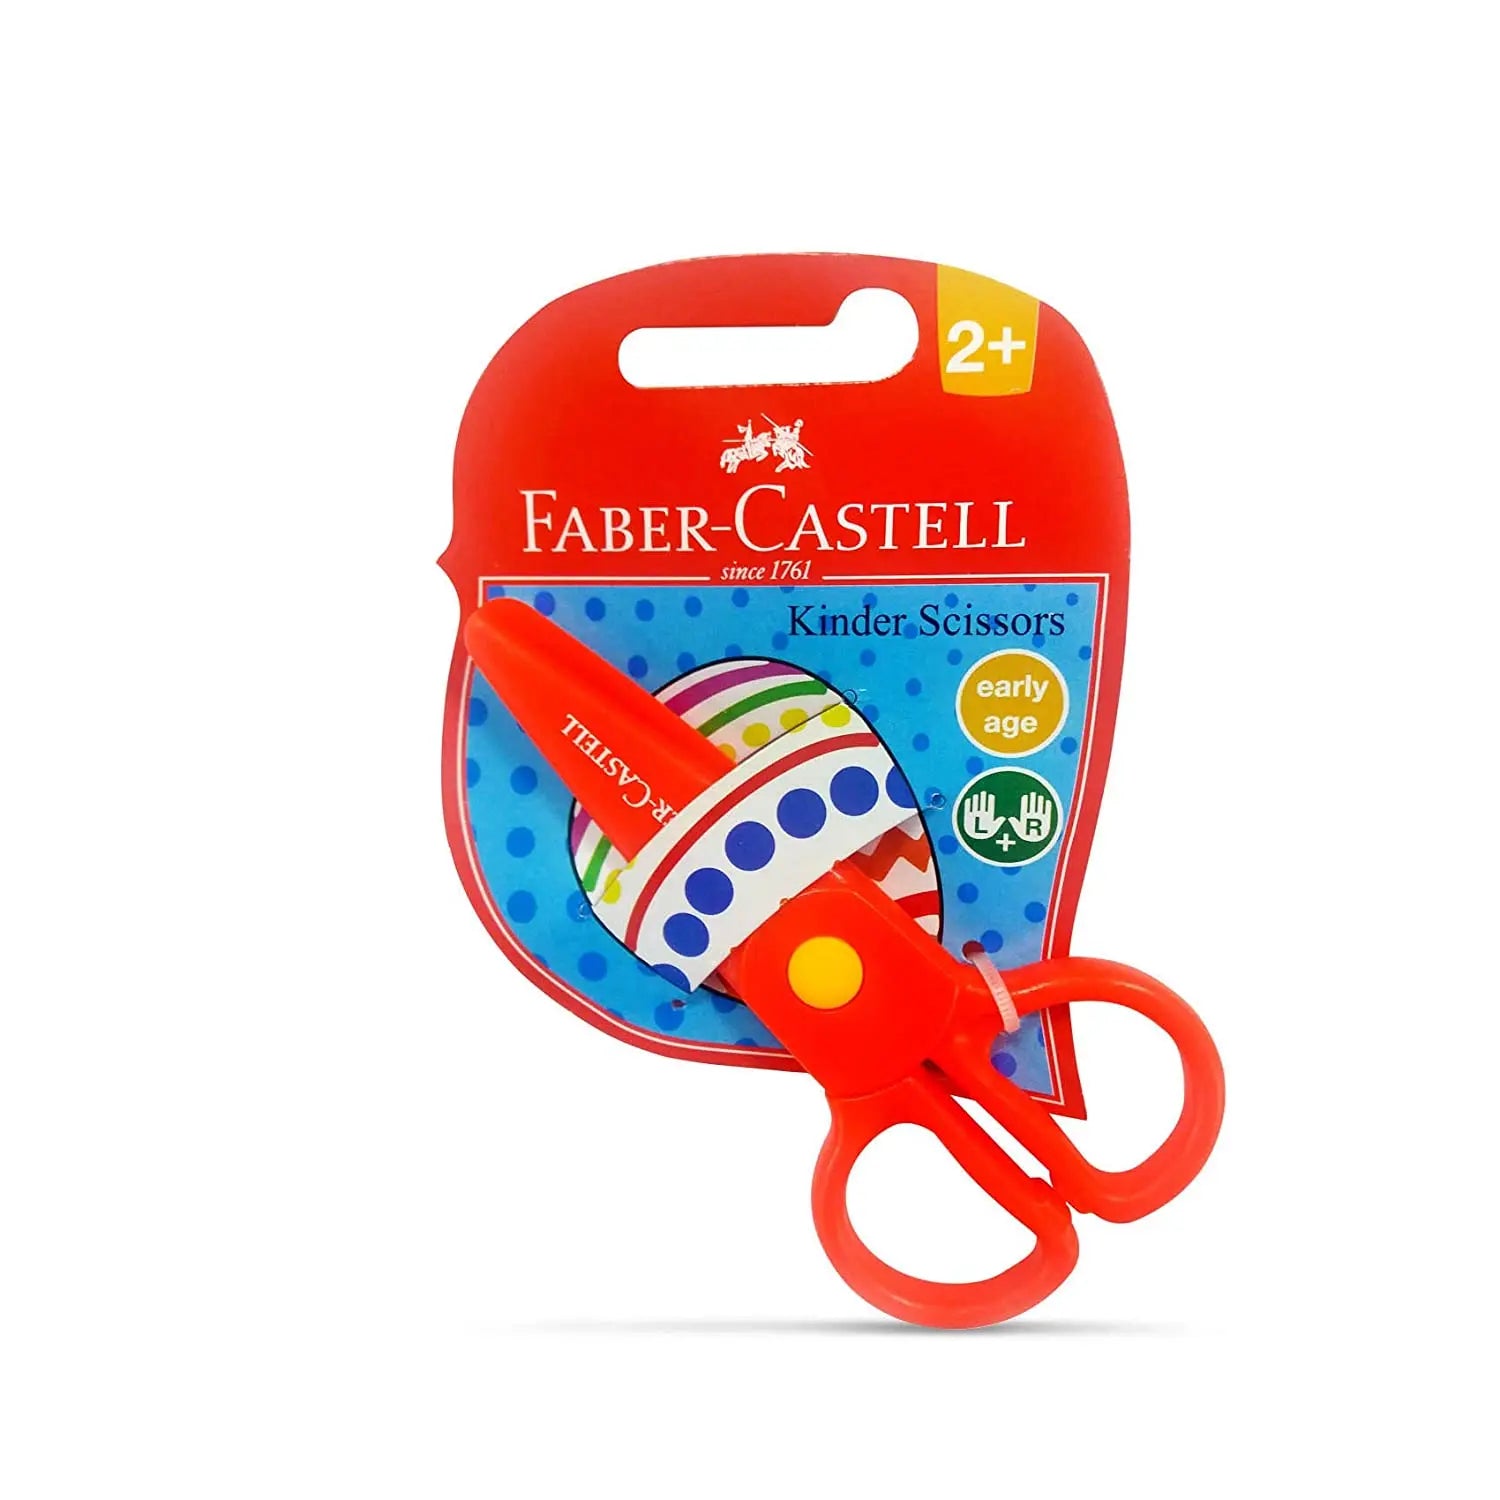 FABER-CASTELL KINDER SCISSORS Faber-Castell